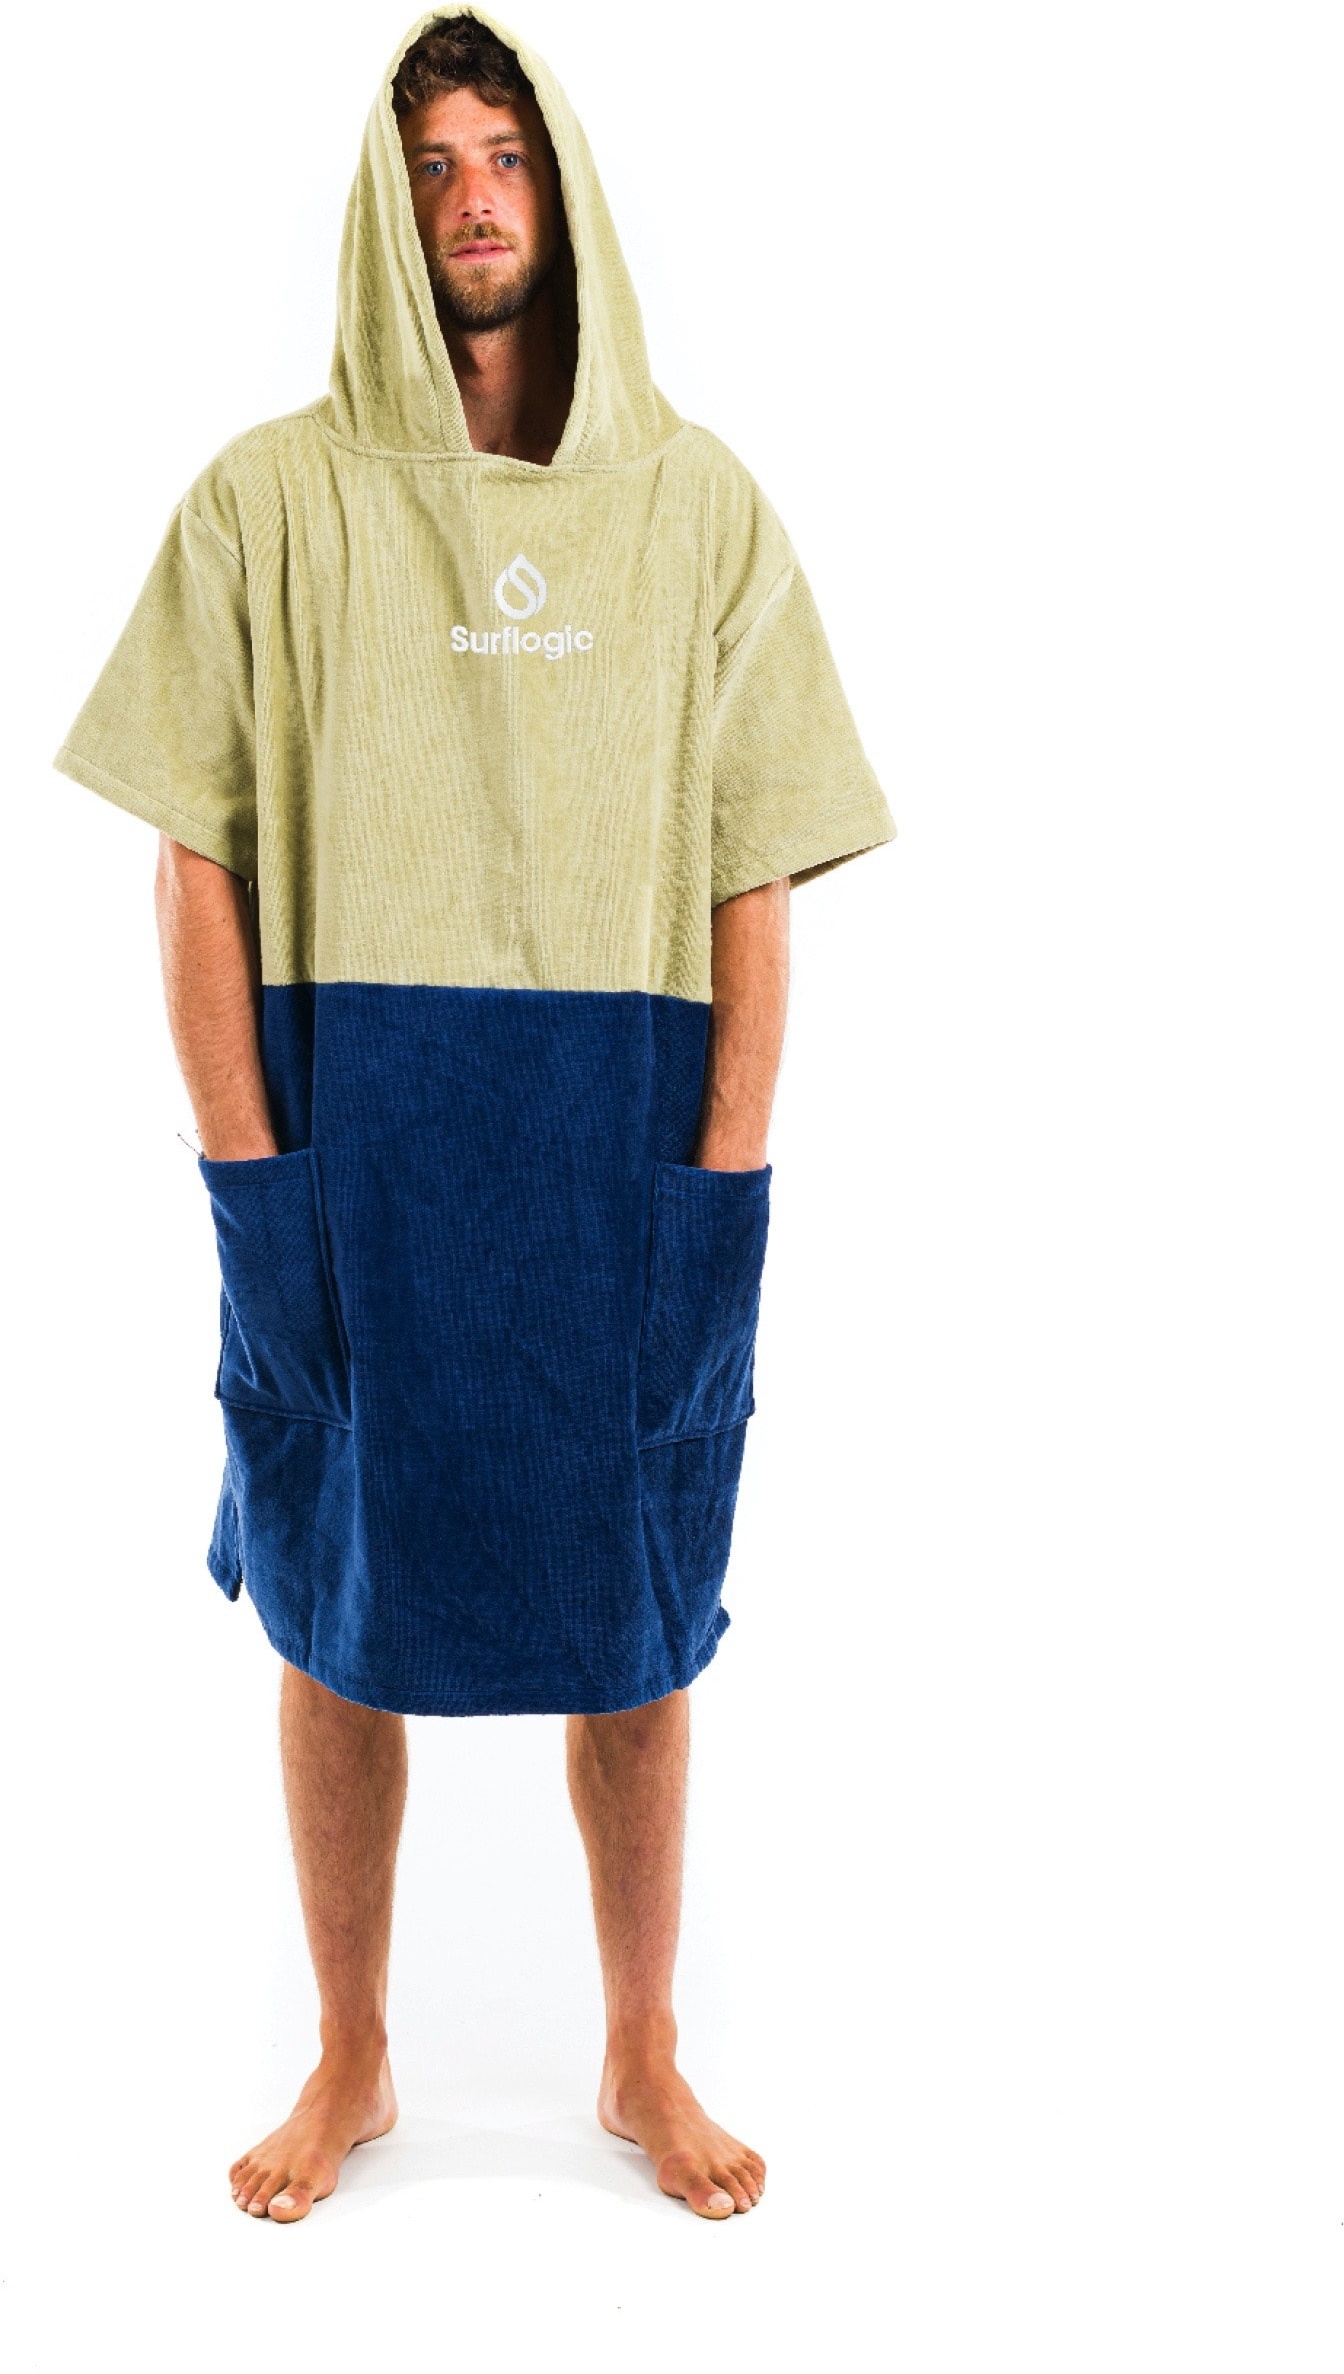 Surflogic Poncho warm handtuch surf wasser Stand umziehen weich, Farbe: Khaki&Navy